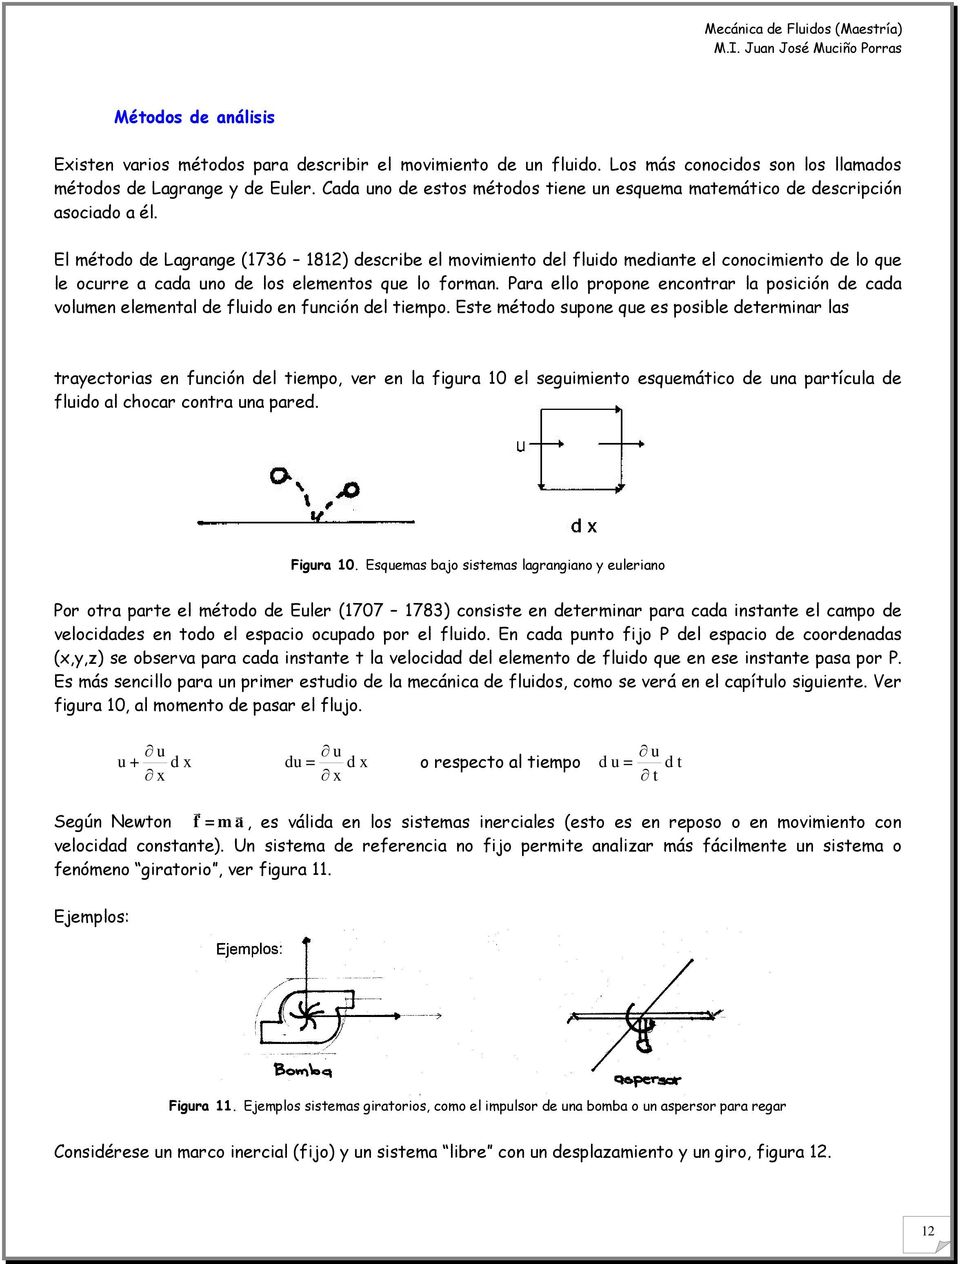 El método de Lagrange (736 8) describe el movimiento del fluido mediante el conocimiento de lo que le ocurre a cada uno de los elementos que lo forman.